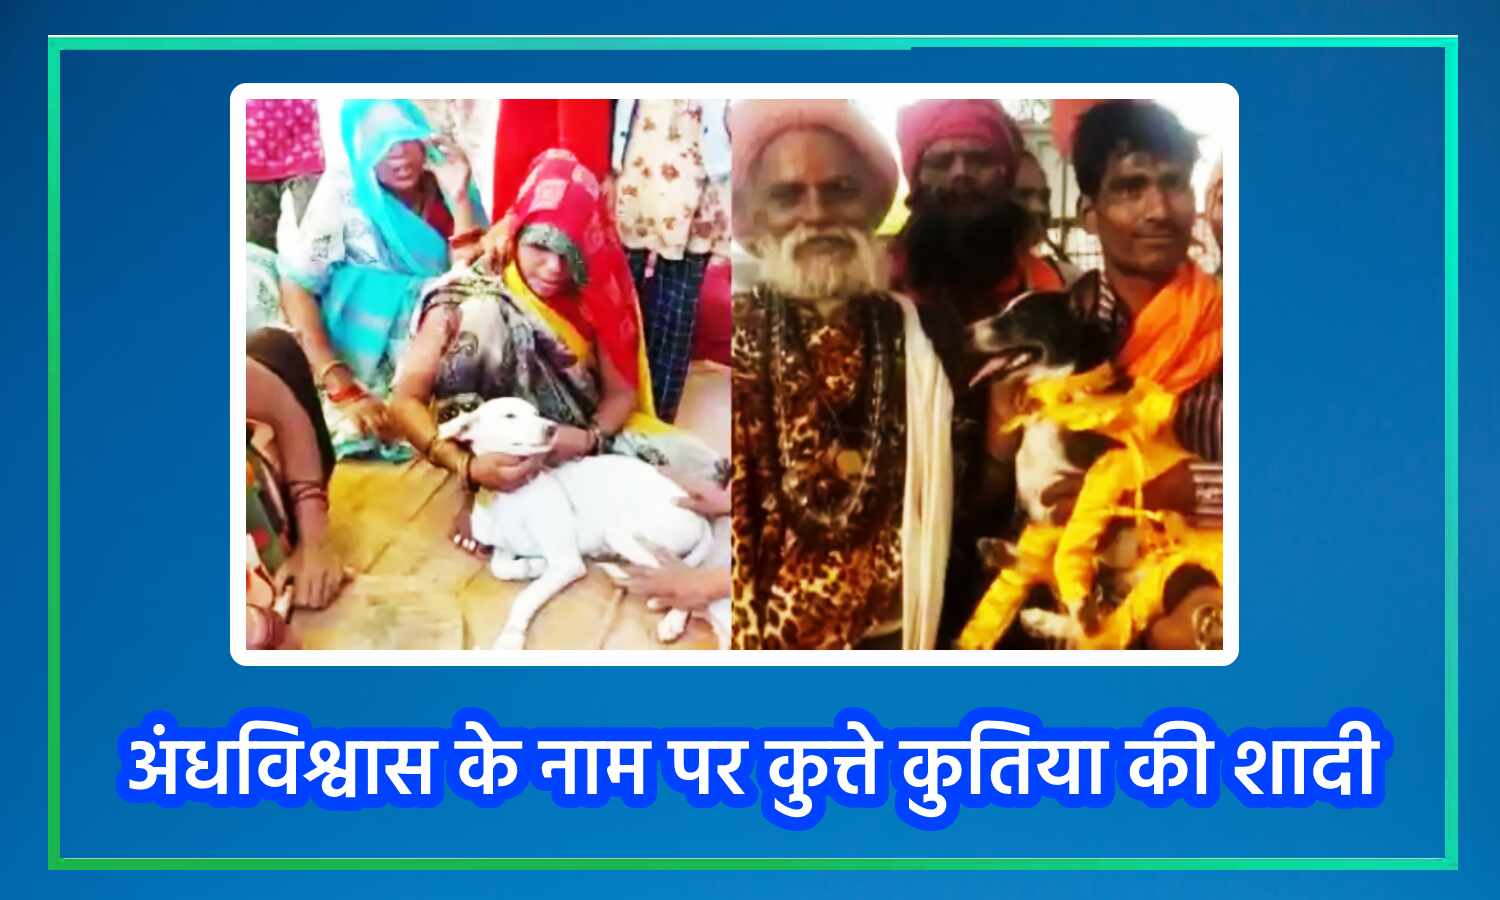 Uttar Pradesh News : कुत्ते और कुतिया की शादी में शामिल हुए 500 लोग, सोने-चांदी के गहनों का चढ़ावा, हिंदू रीति-रिवाजों के साथ पूरी हुई रस्में